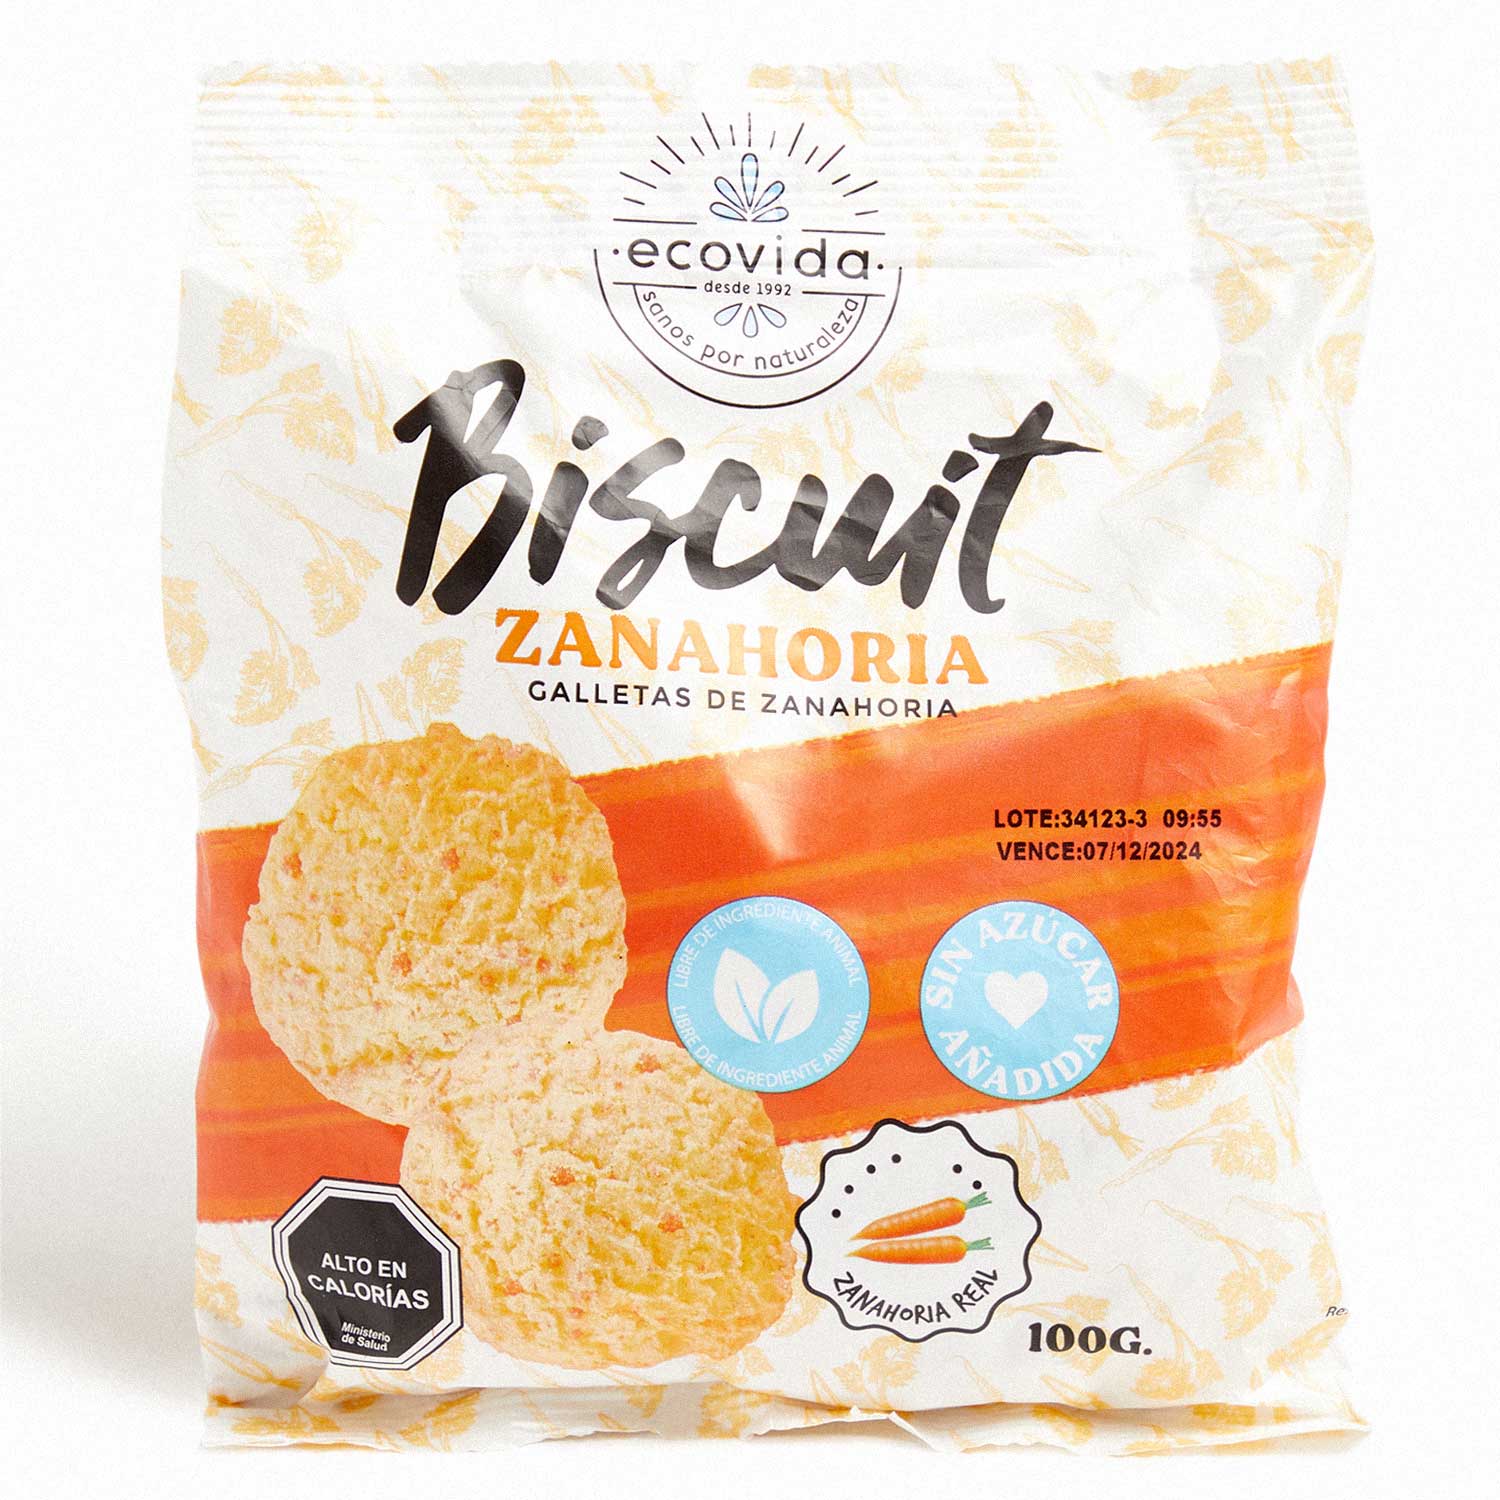 2 x Biscuits Zanahoria S/Azucar 100 g